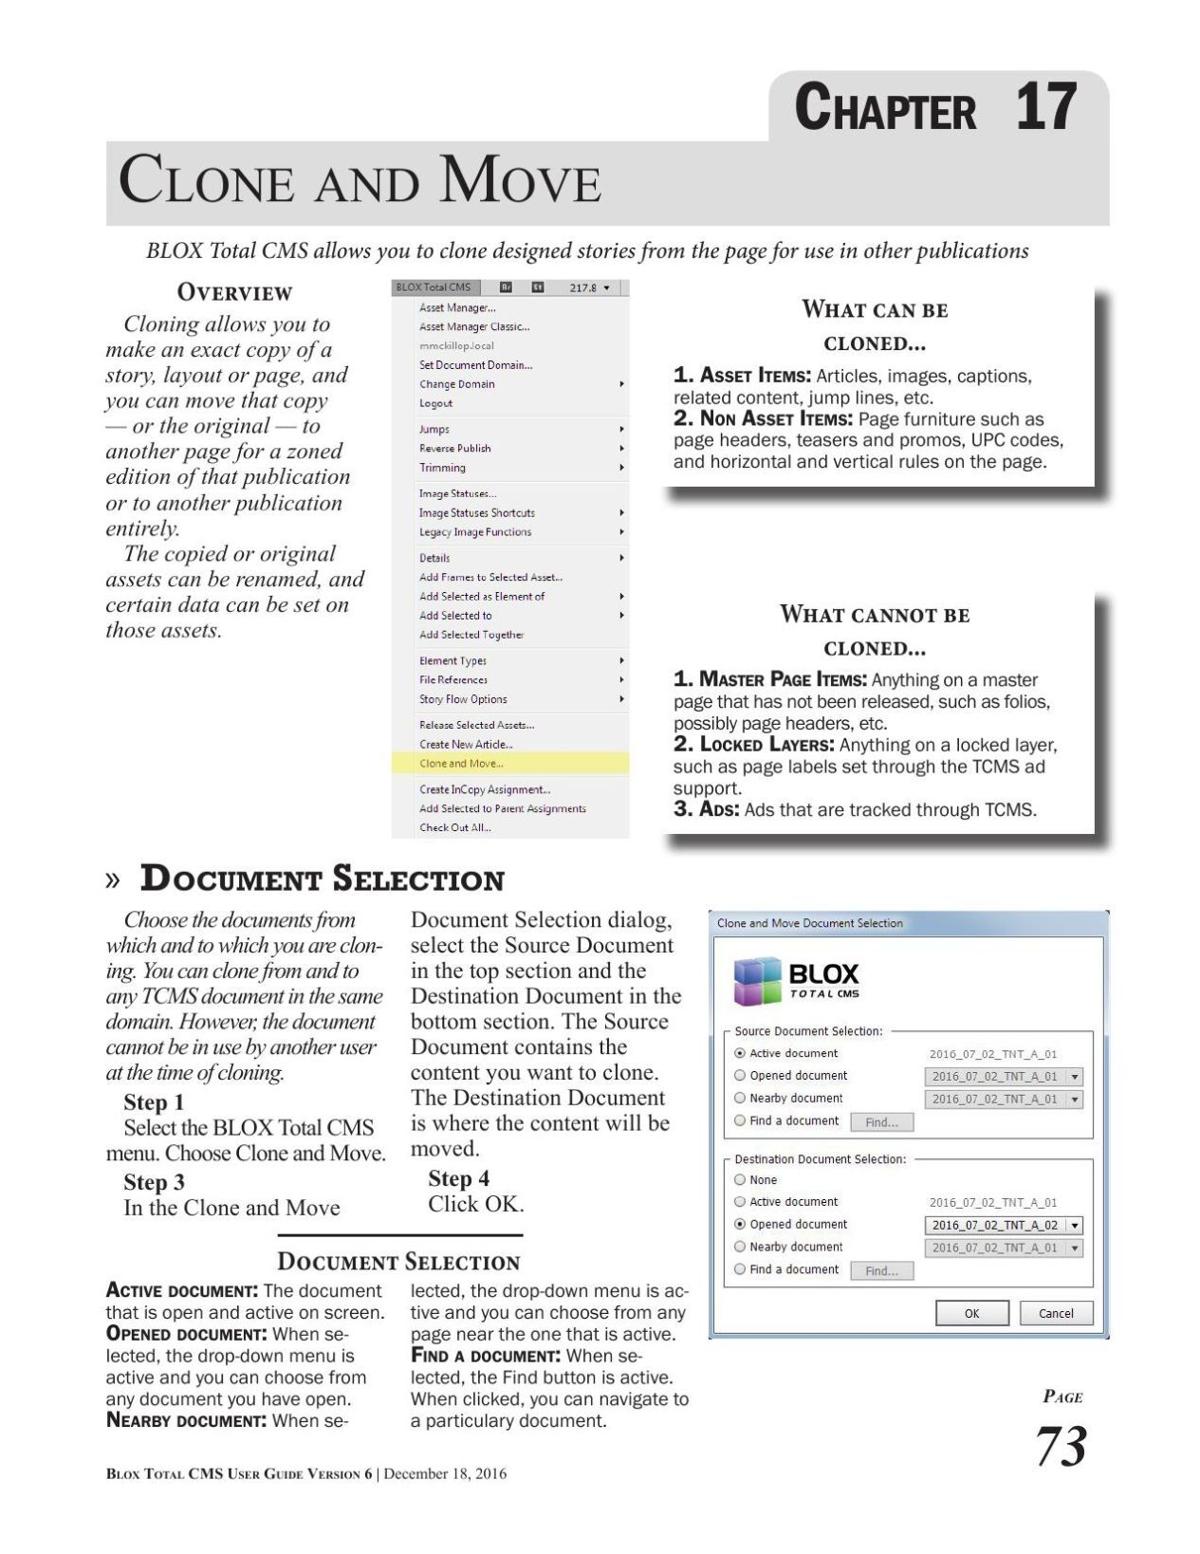 Ch. 17 - Clone and Move (PDF)